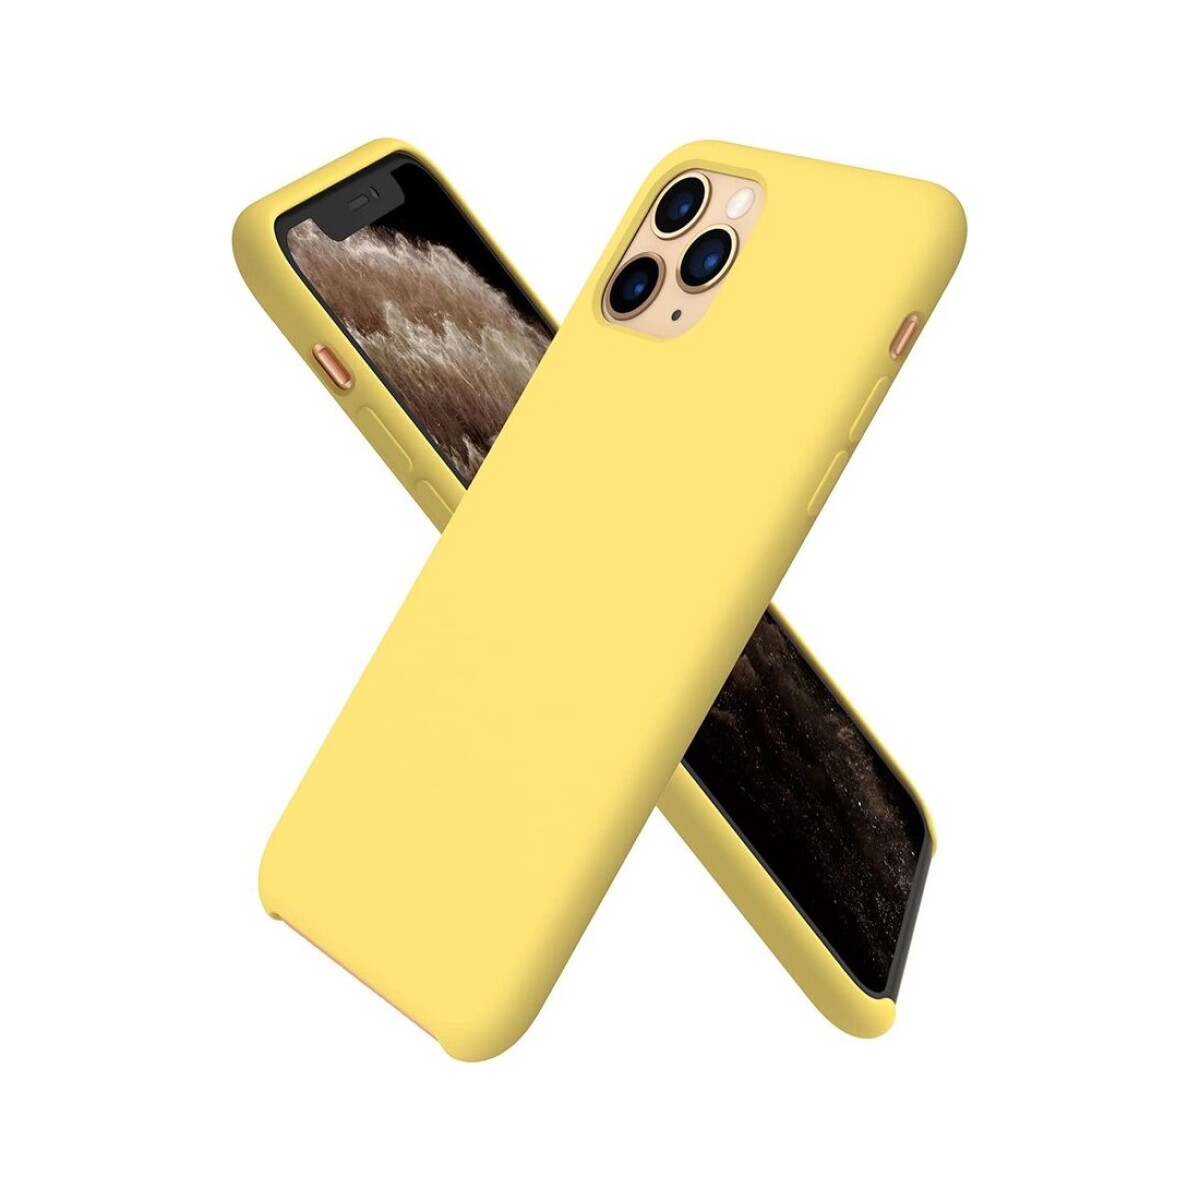 Protector case de silicona para iphone 11 pro max - Amarillo 